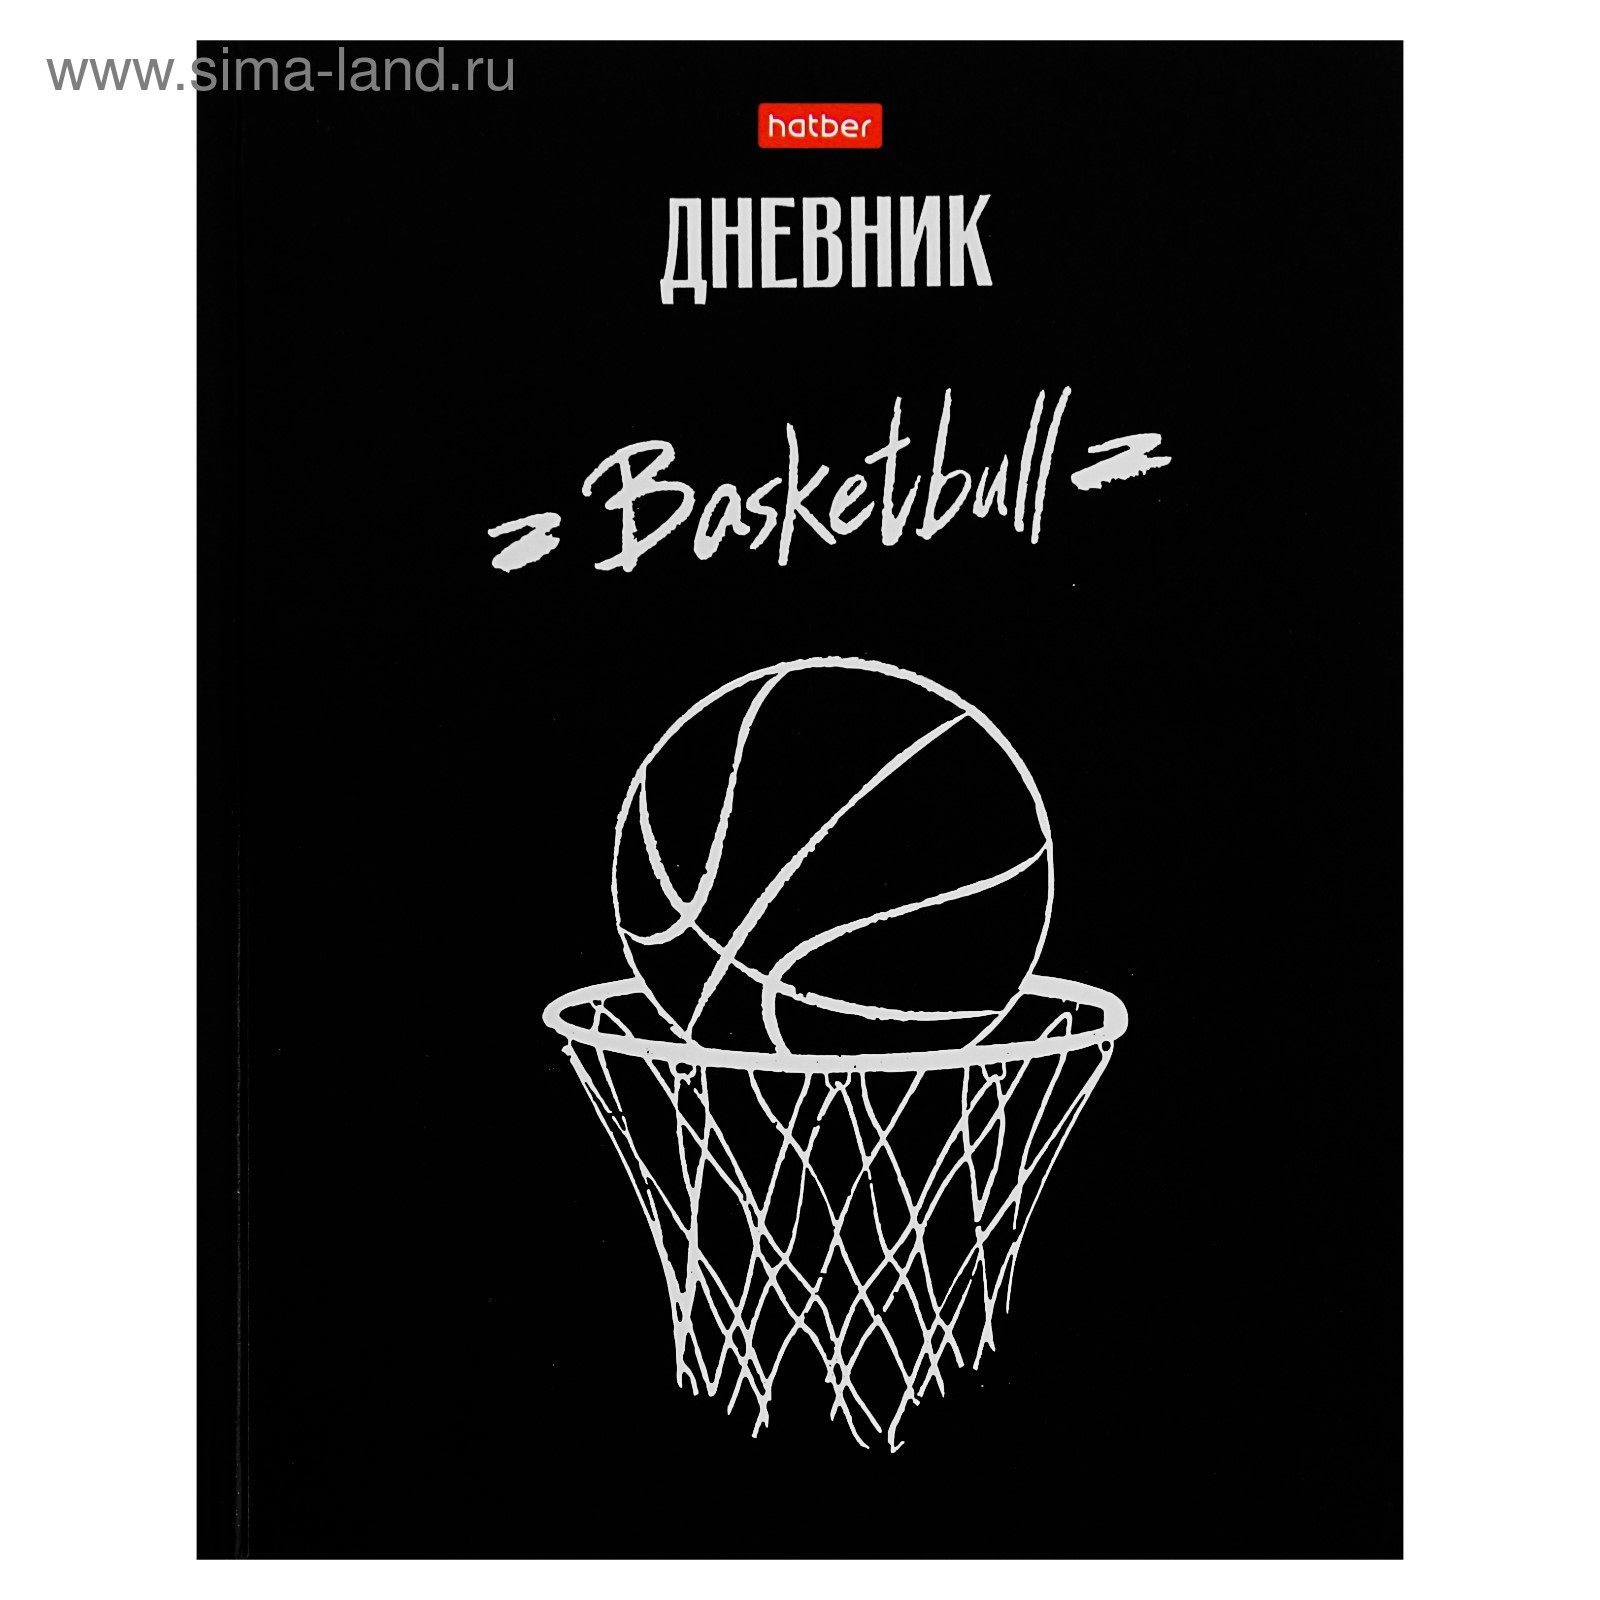 Дневник школьный баскетбол